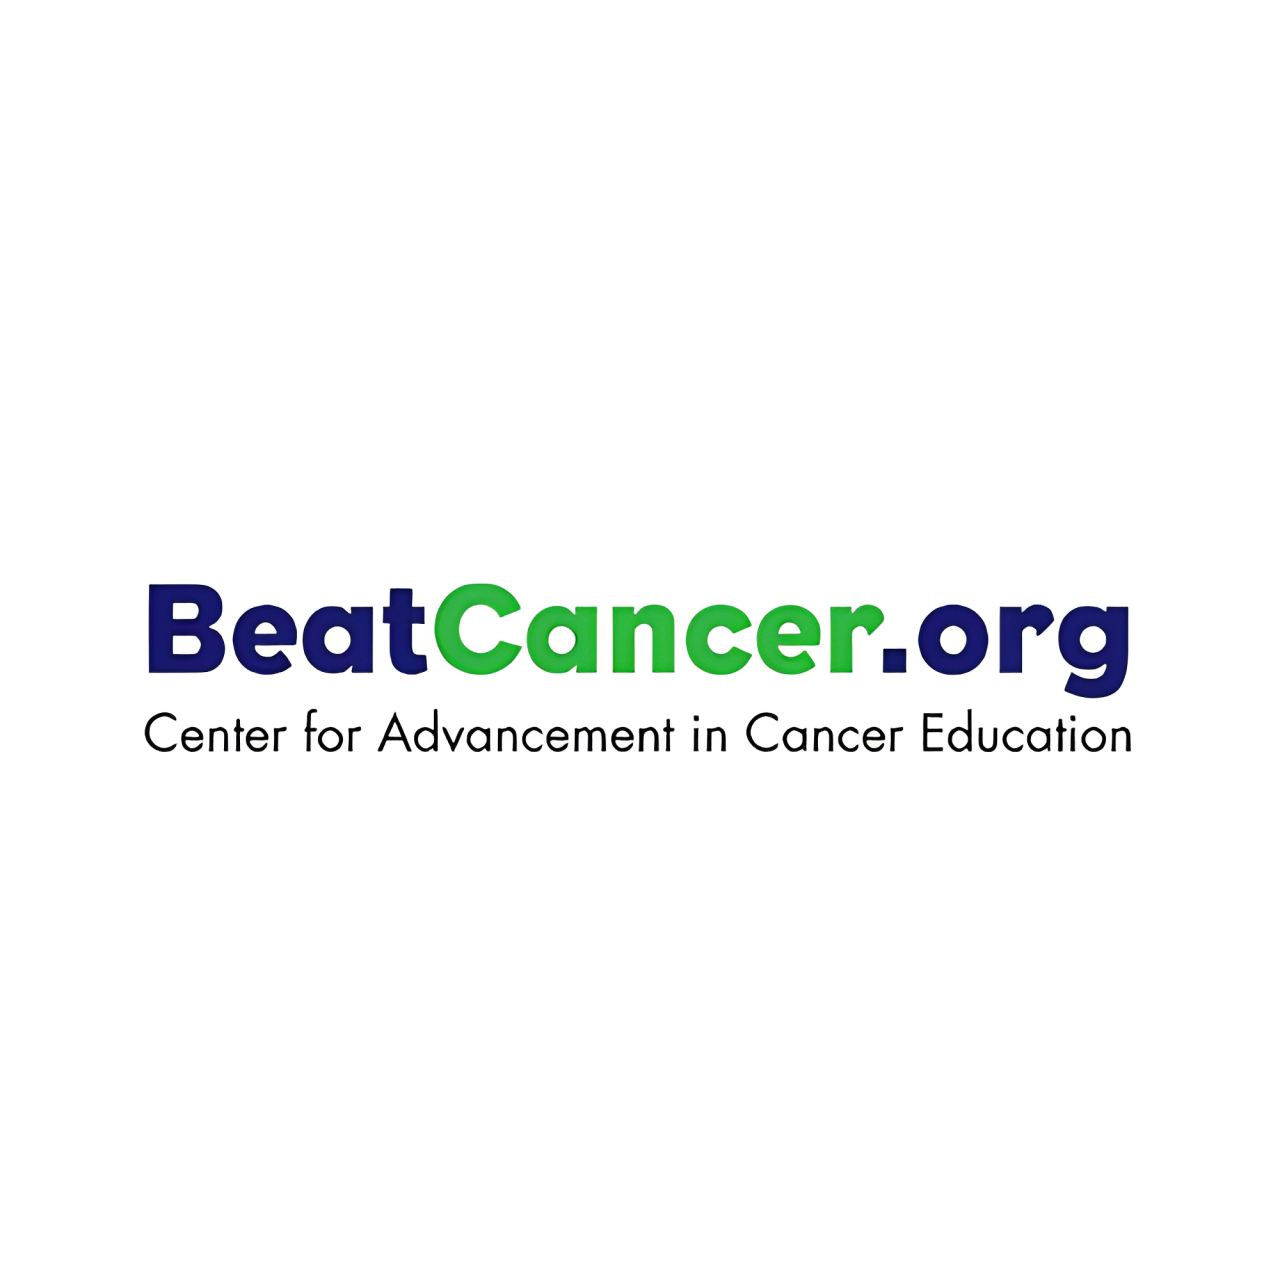 www.beatcancer.org